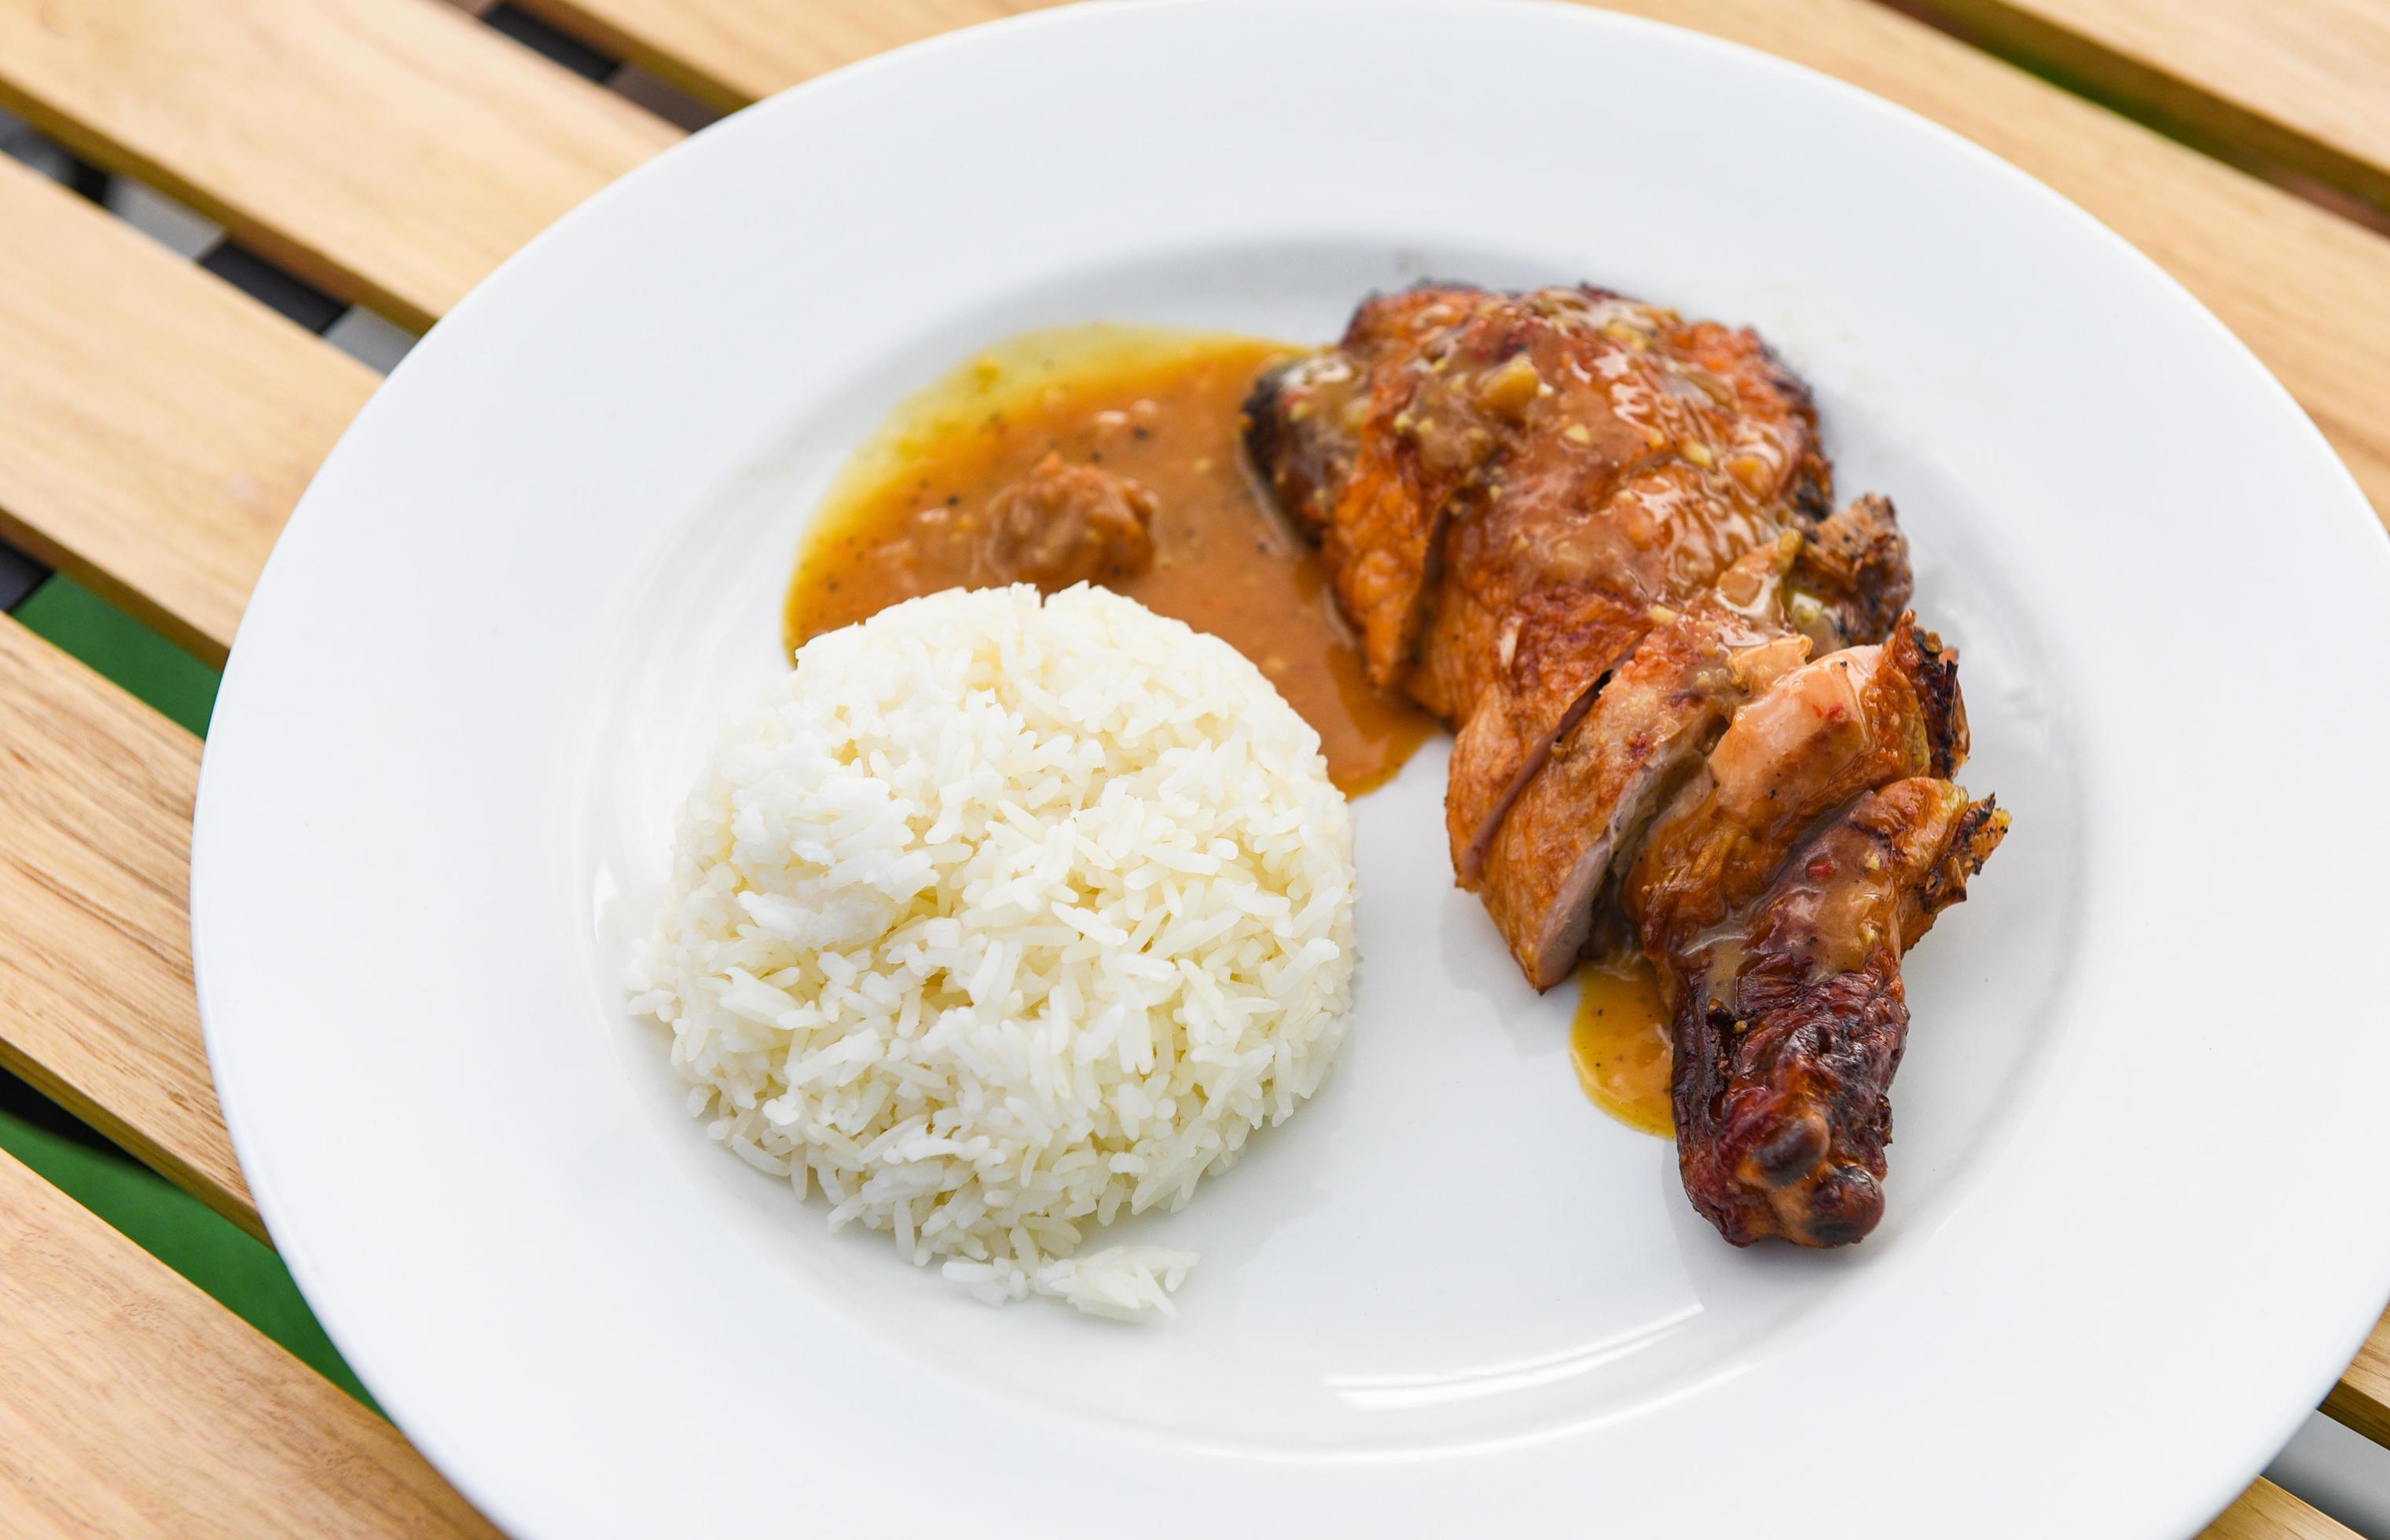 riz thaï, riz blanc cuit et poulet grillé avec sauce sur plaque blanche et fond de table en bois, cuisses de poulet barbecue épicées grillées photo